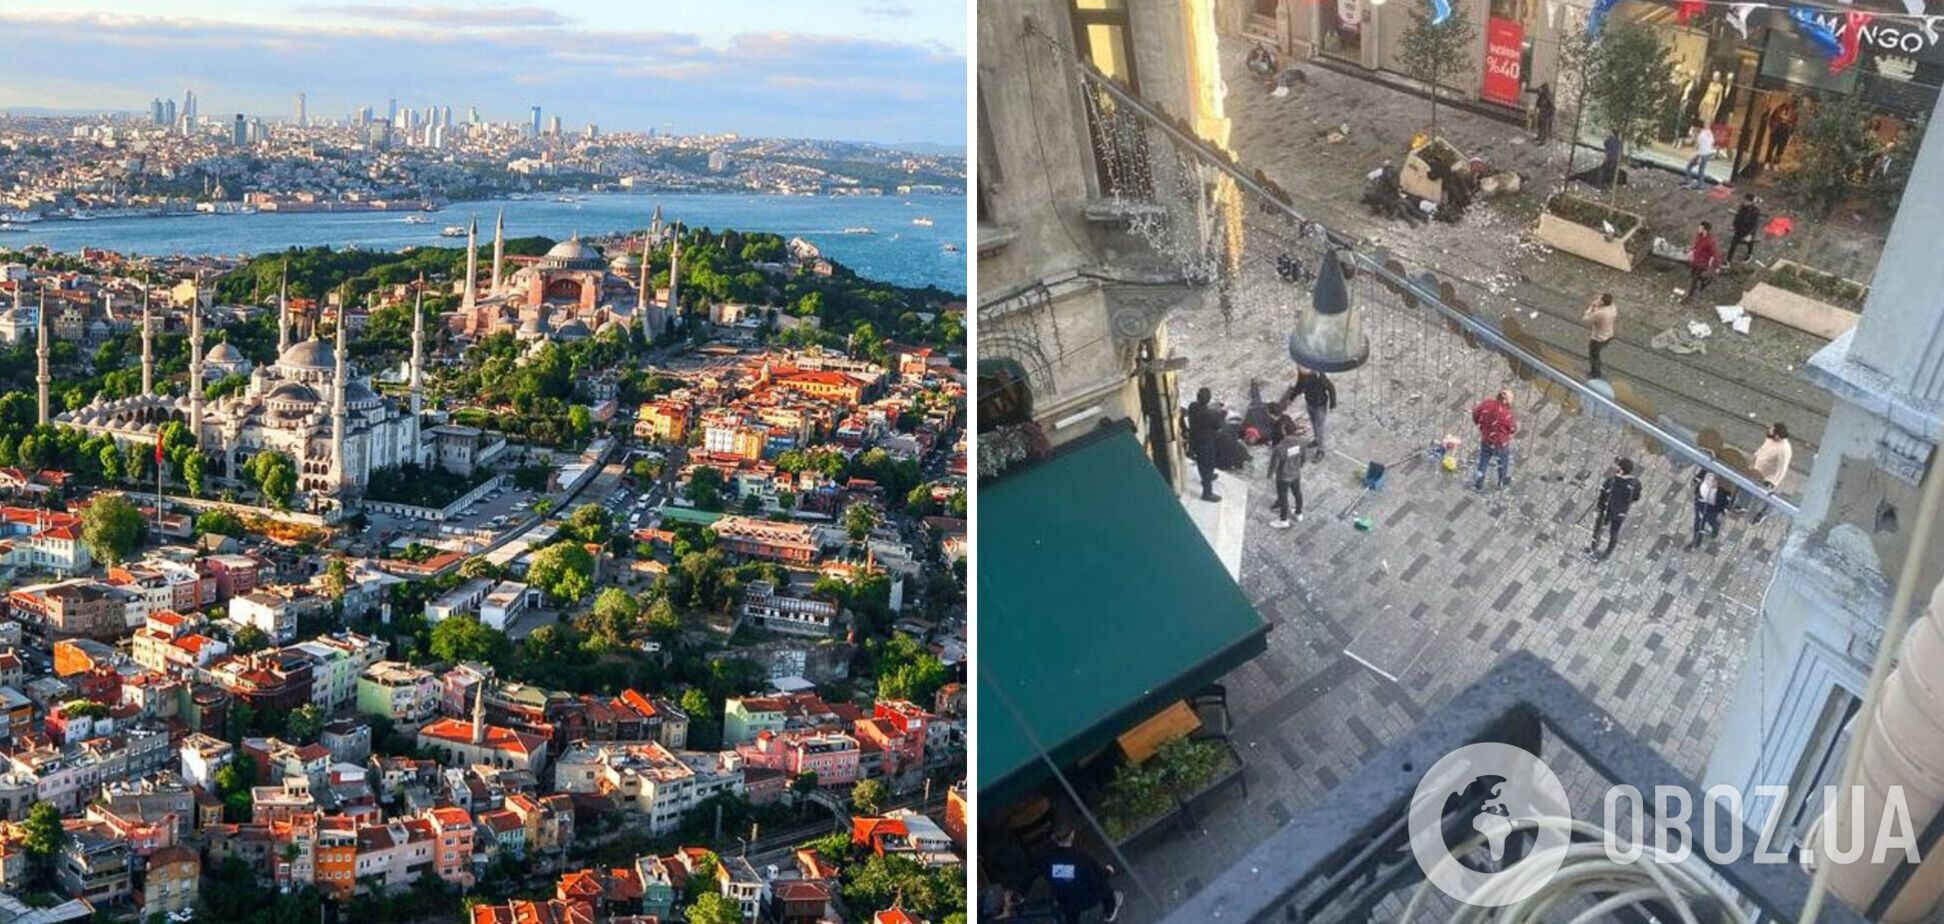 У центрі Стамбула трапився теракт, загинули шестеро осіб, 81 поранено: винуватця затримали. Фото й відео